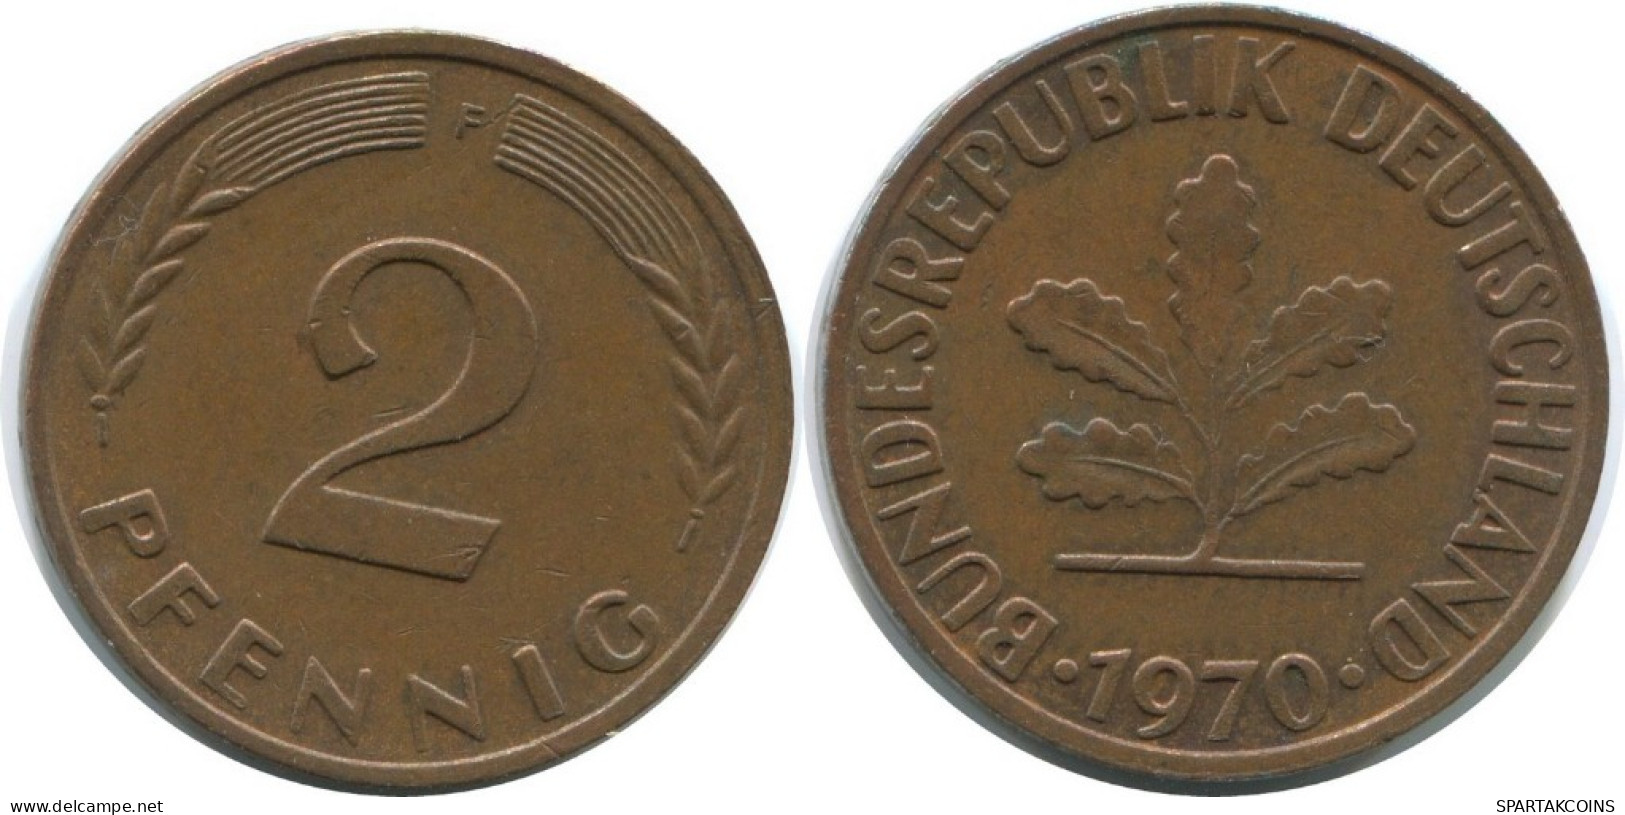 2 PFENNIG 1970 F WEST & UNIFIED GERMANY Coin #AD861.9.U.A - 2 Pfennig